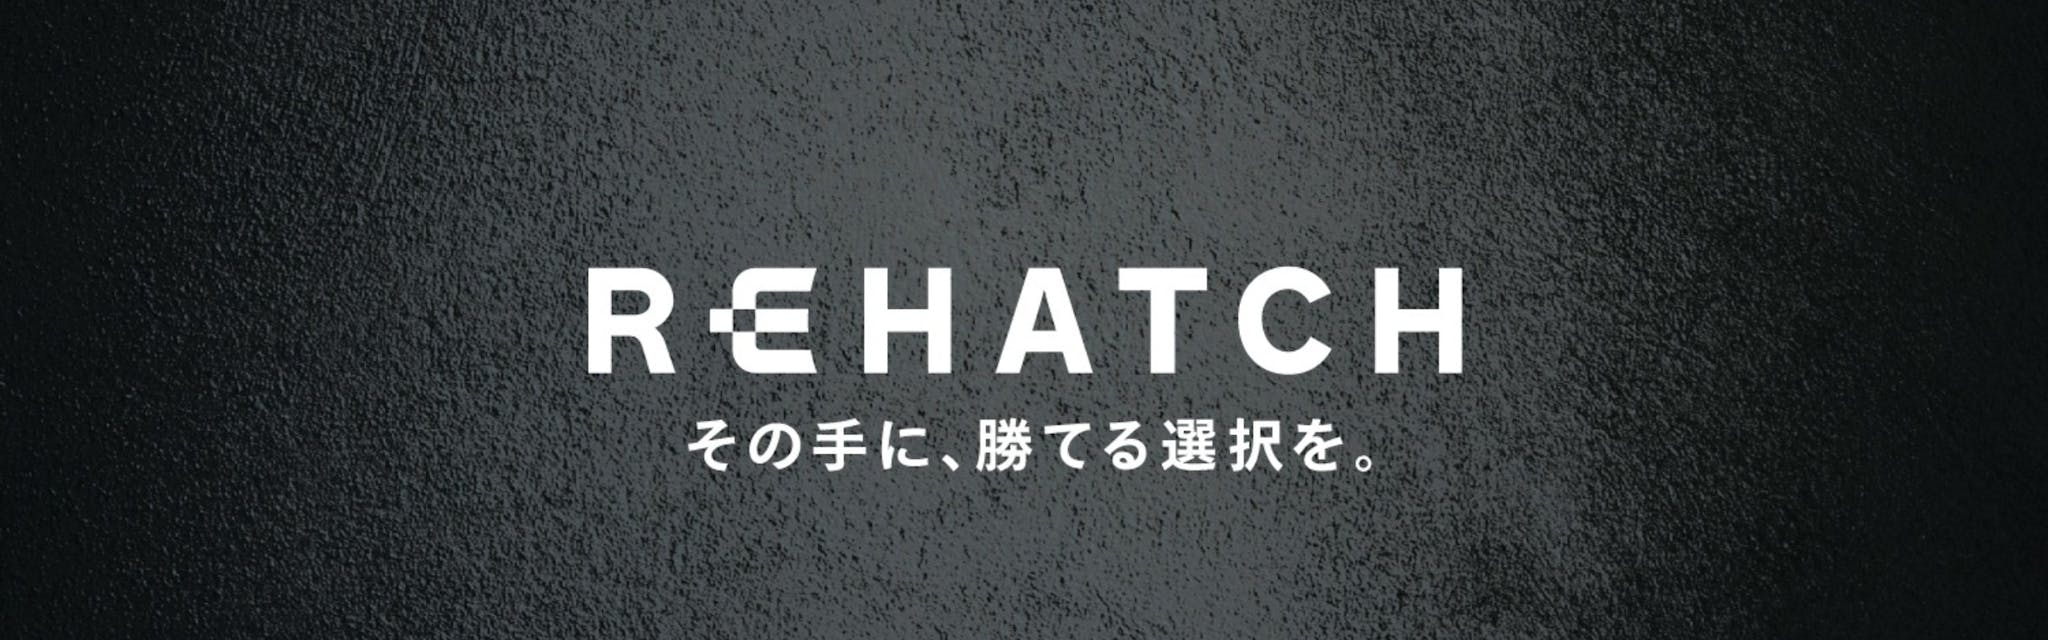 REHATCH株式会社 - カバー画像